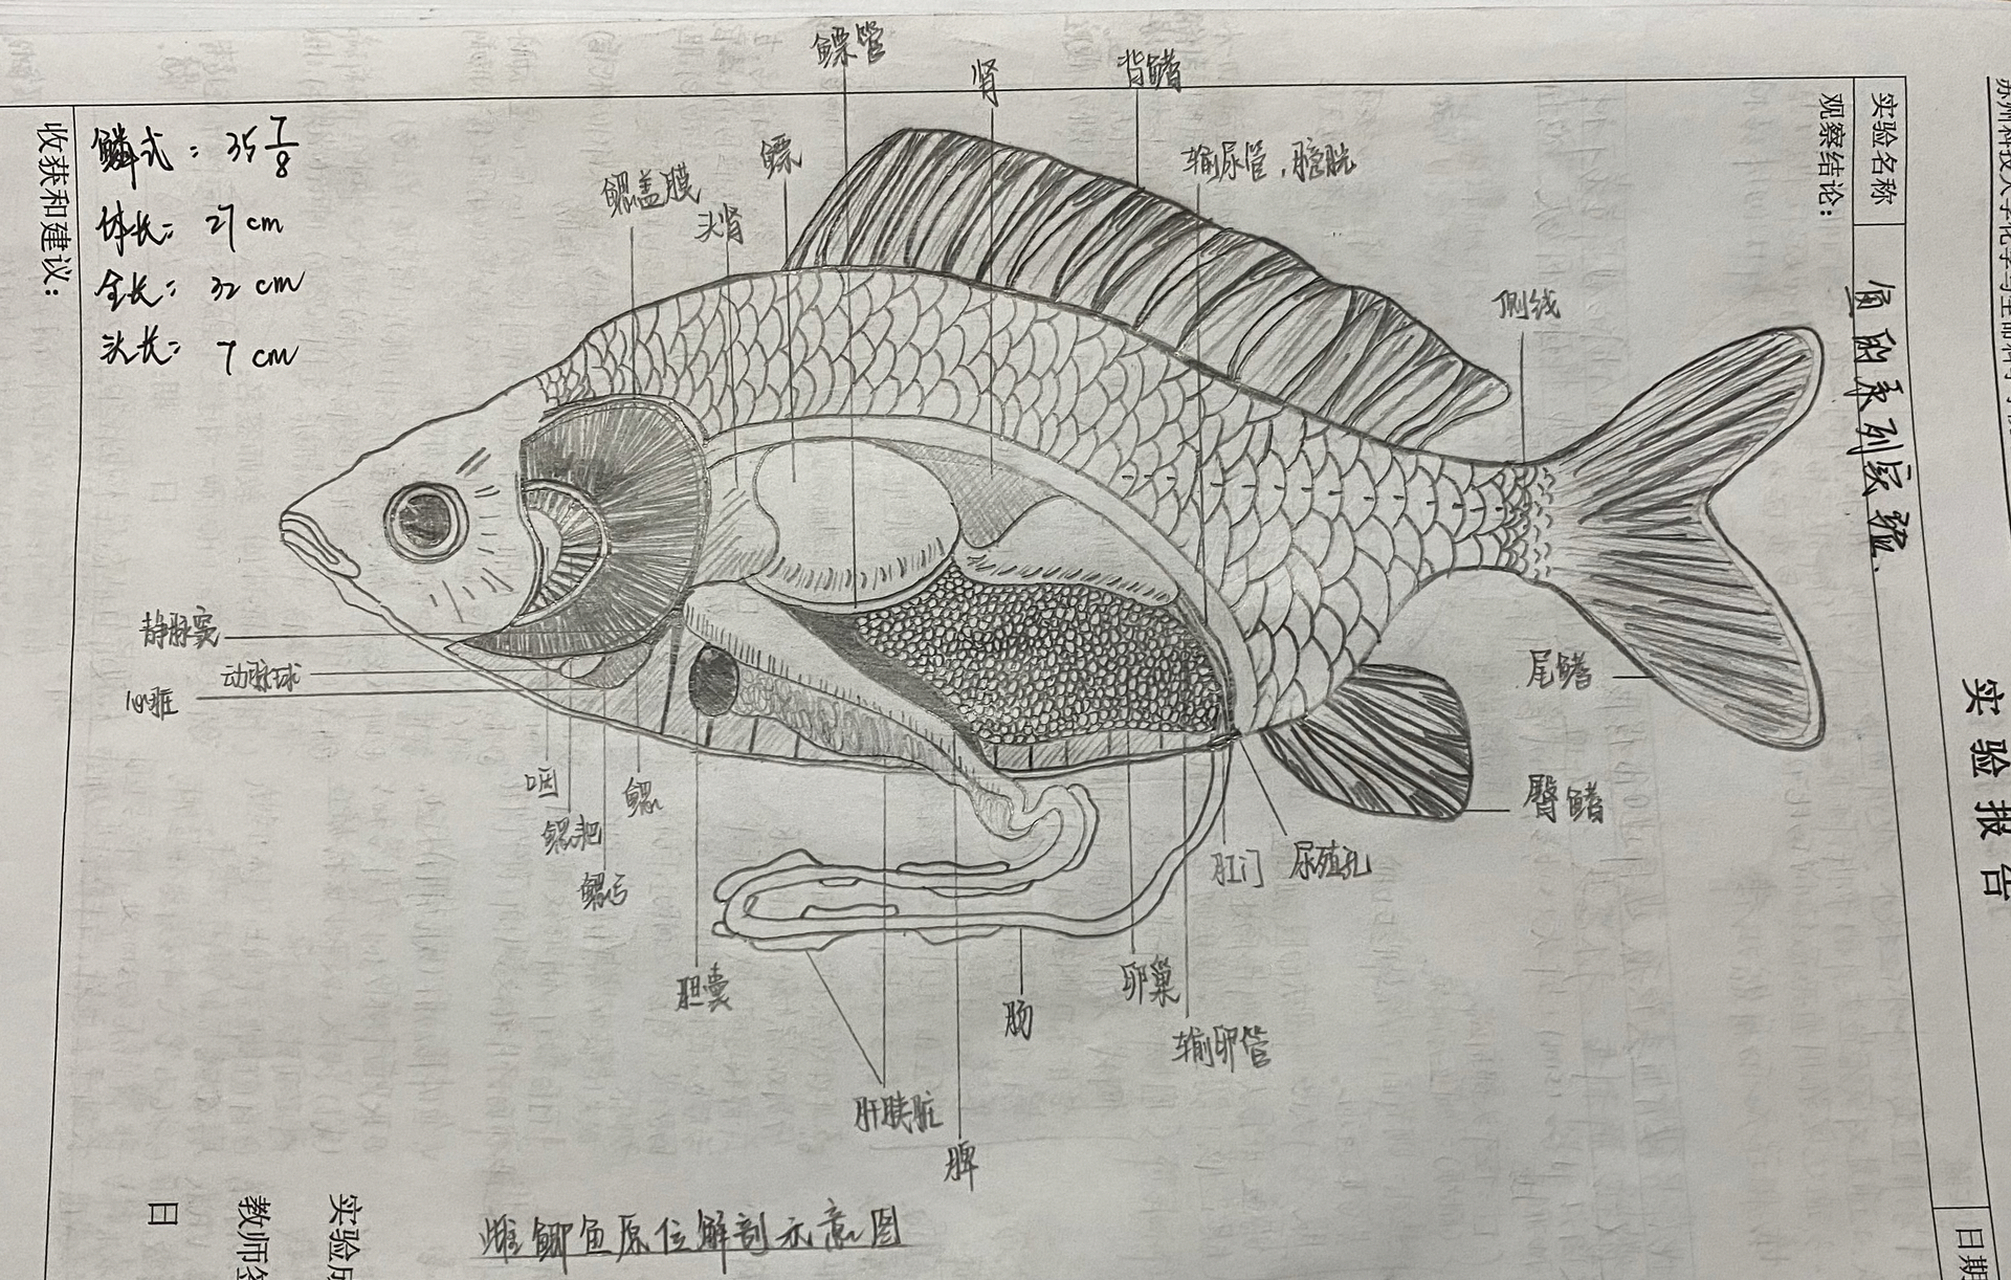 鲫鱼结构图解剖图片